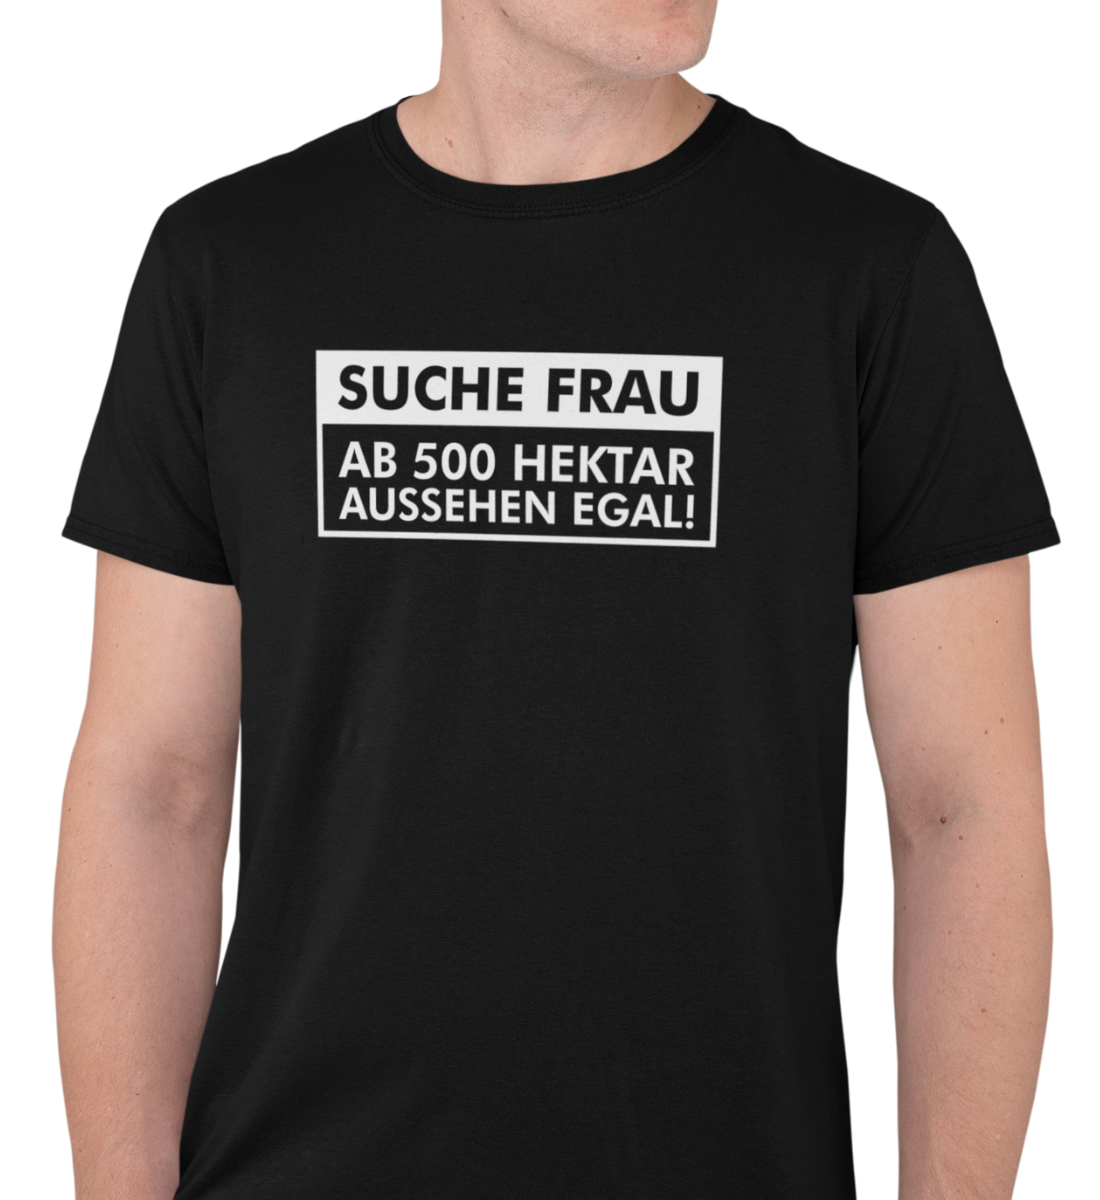 "SUCHE FRAU" HERREN BIO T-SHIRT